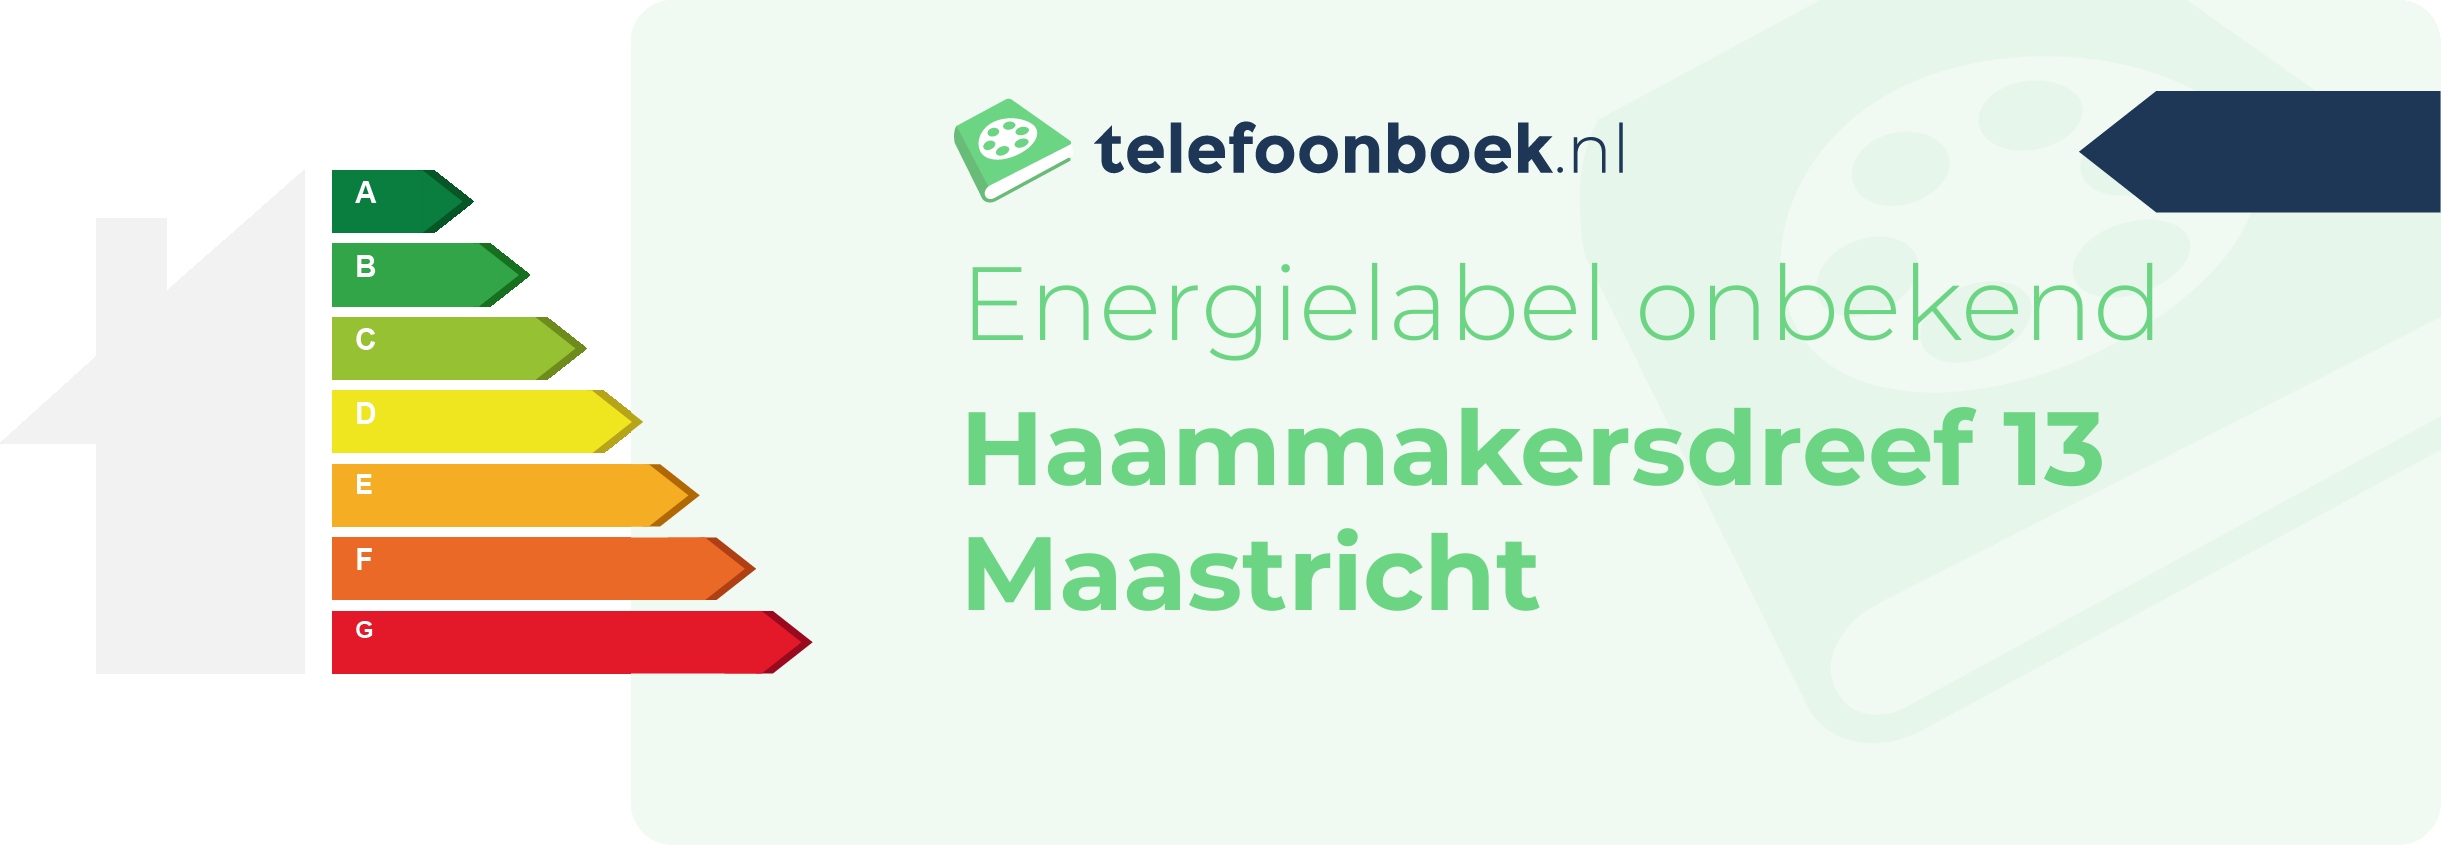 Energielabel Haammakersdreef 13 Maastricht